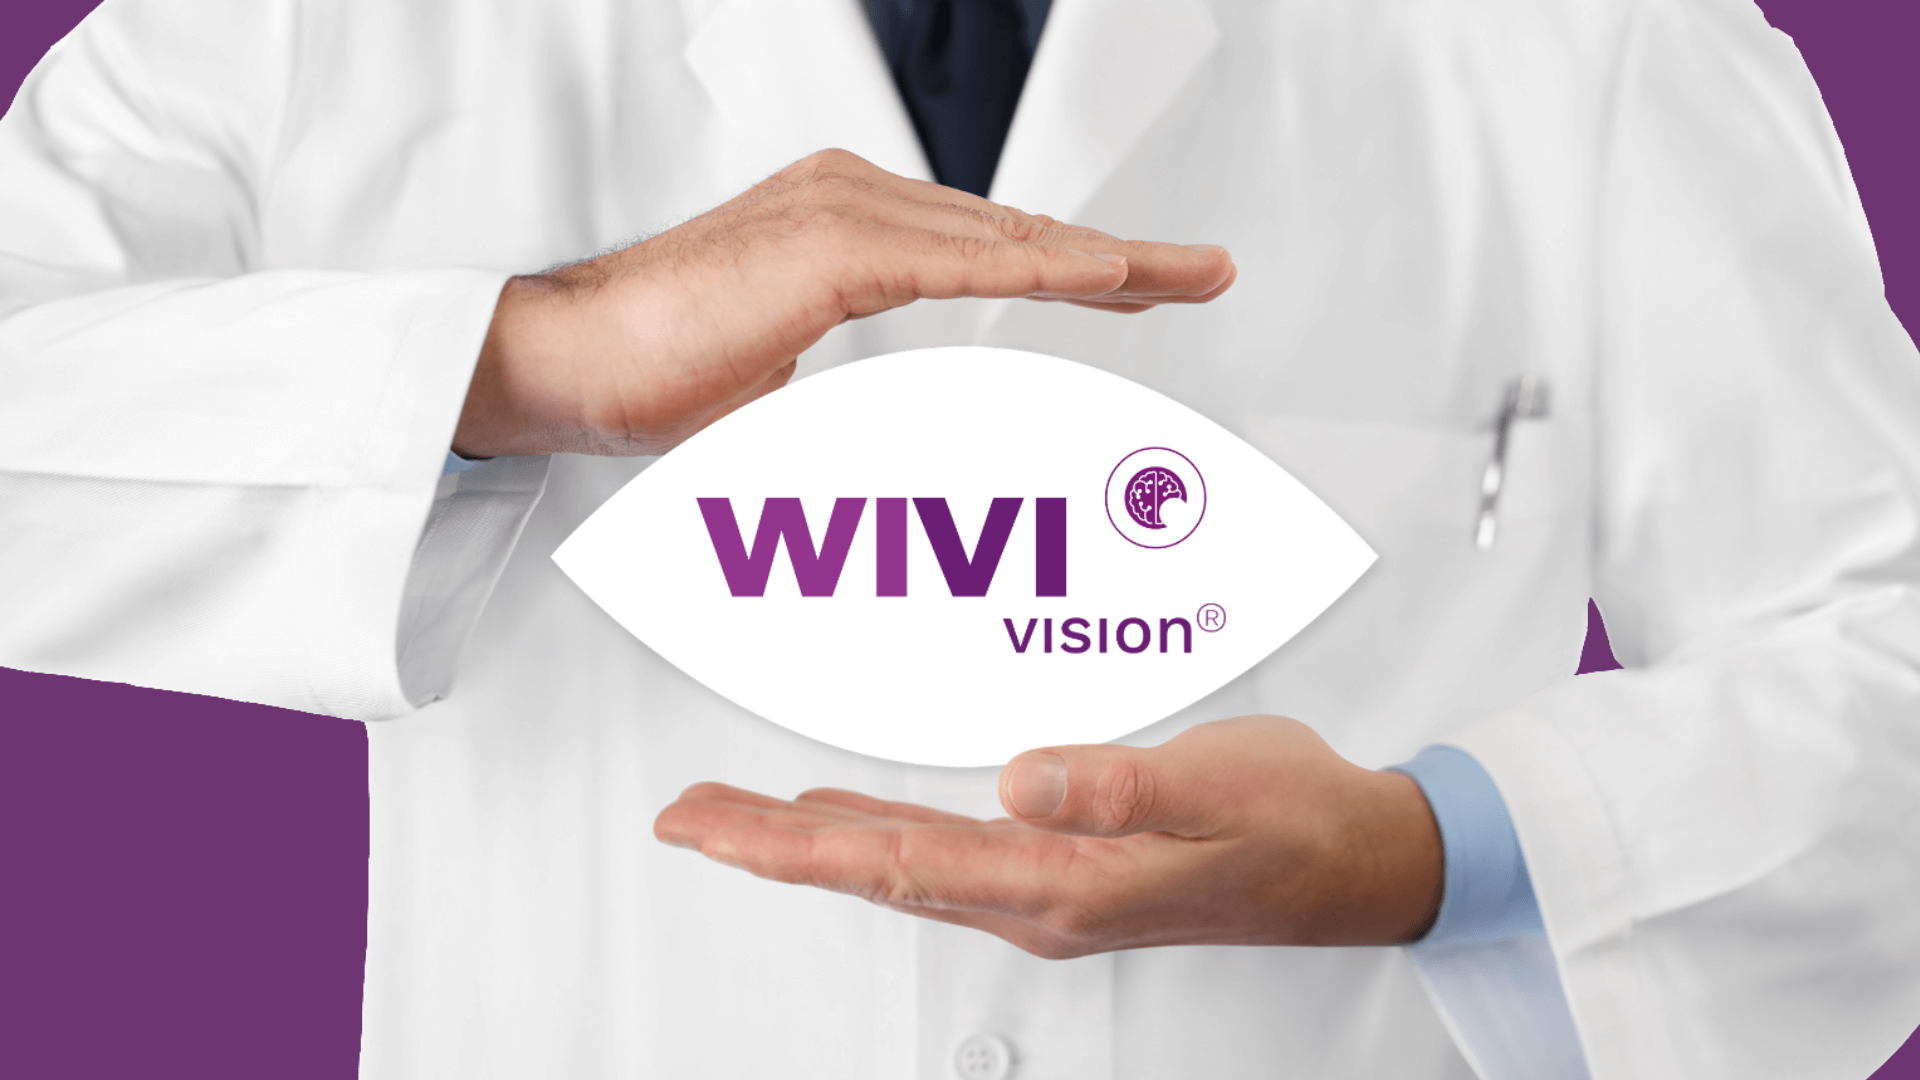 WIVI Vision